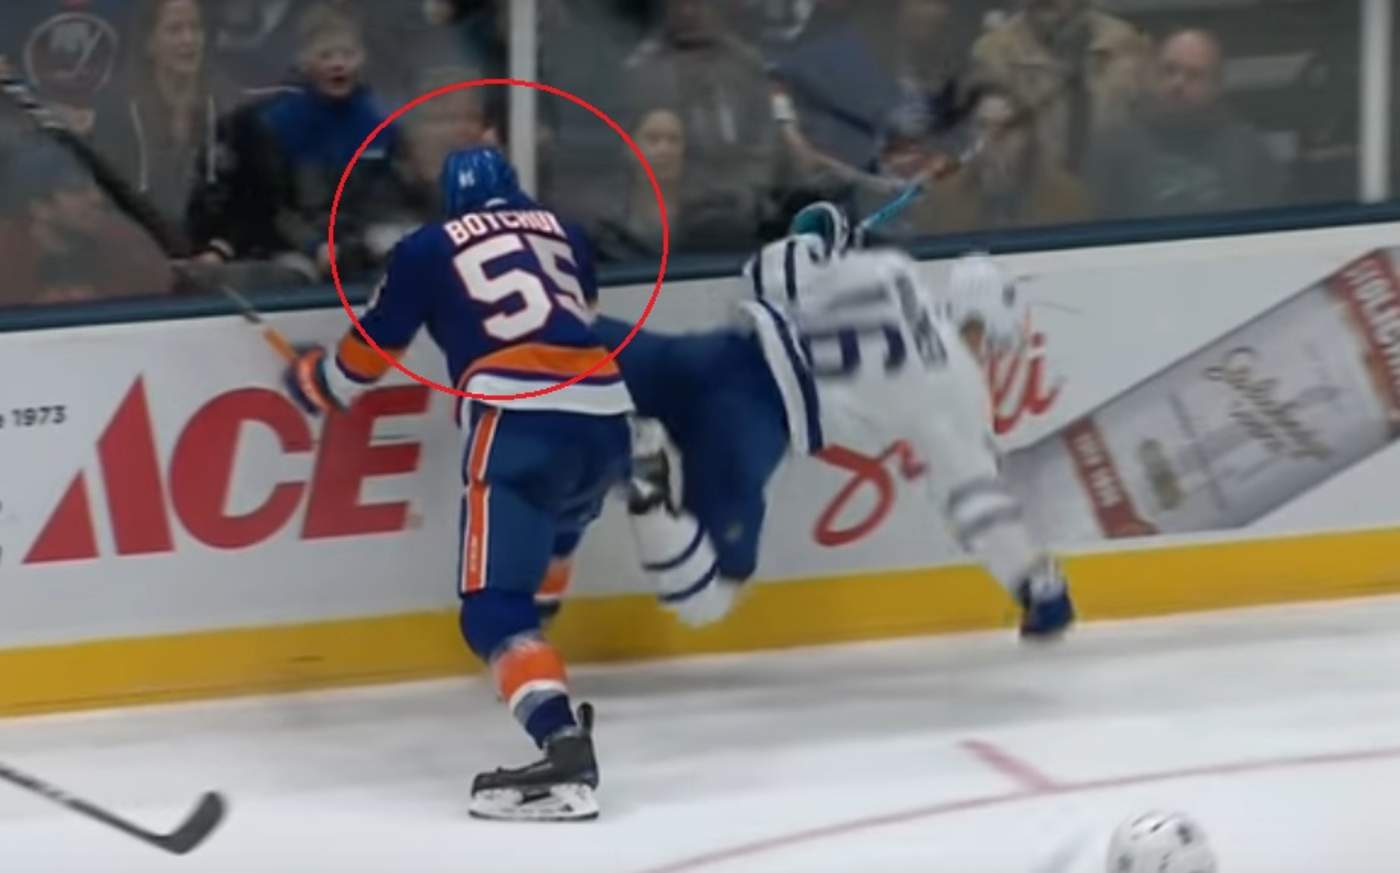 Jugador de hockey sobre hielo sufre corte en el cuello con un patín